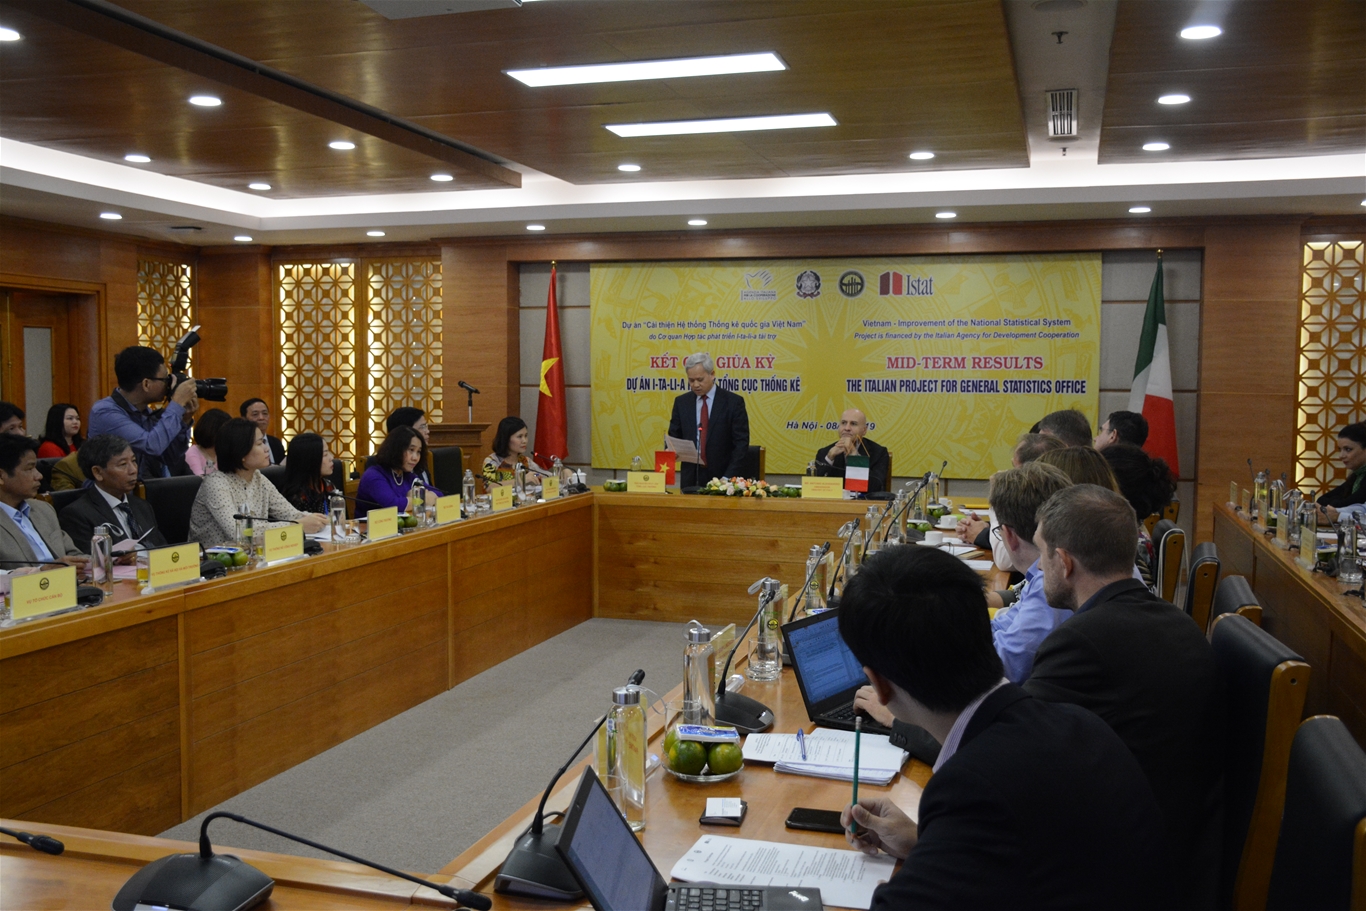 Tổng cục Thống kê tiếp đón Đại sứ Italia tại Việt Nam và giới thiệu kết quả giữa kỳ dự án “Cải thiện Hệ thống Thống kê quốc gia Việt Nam” 1